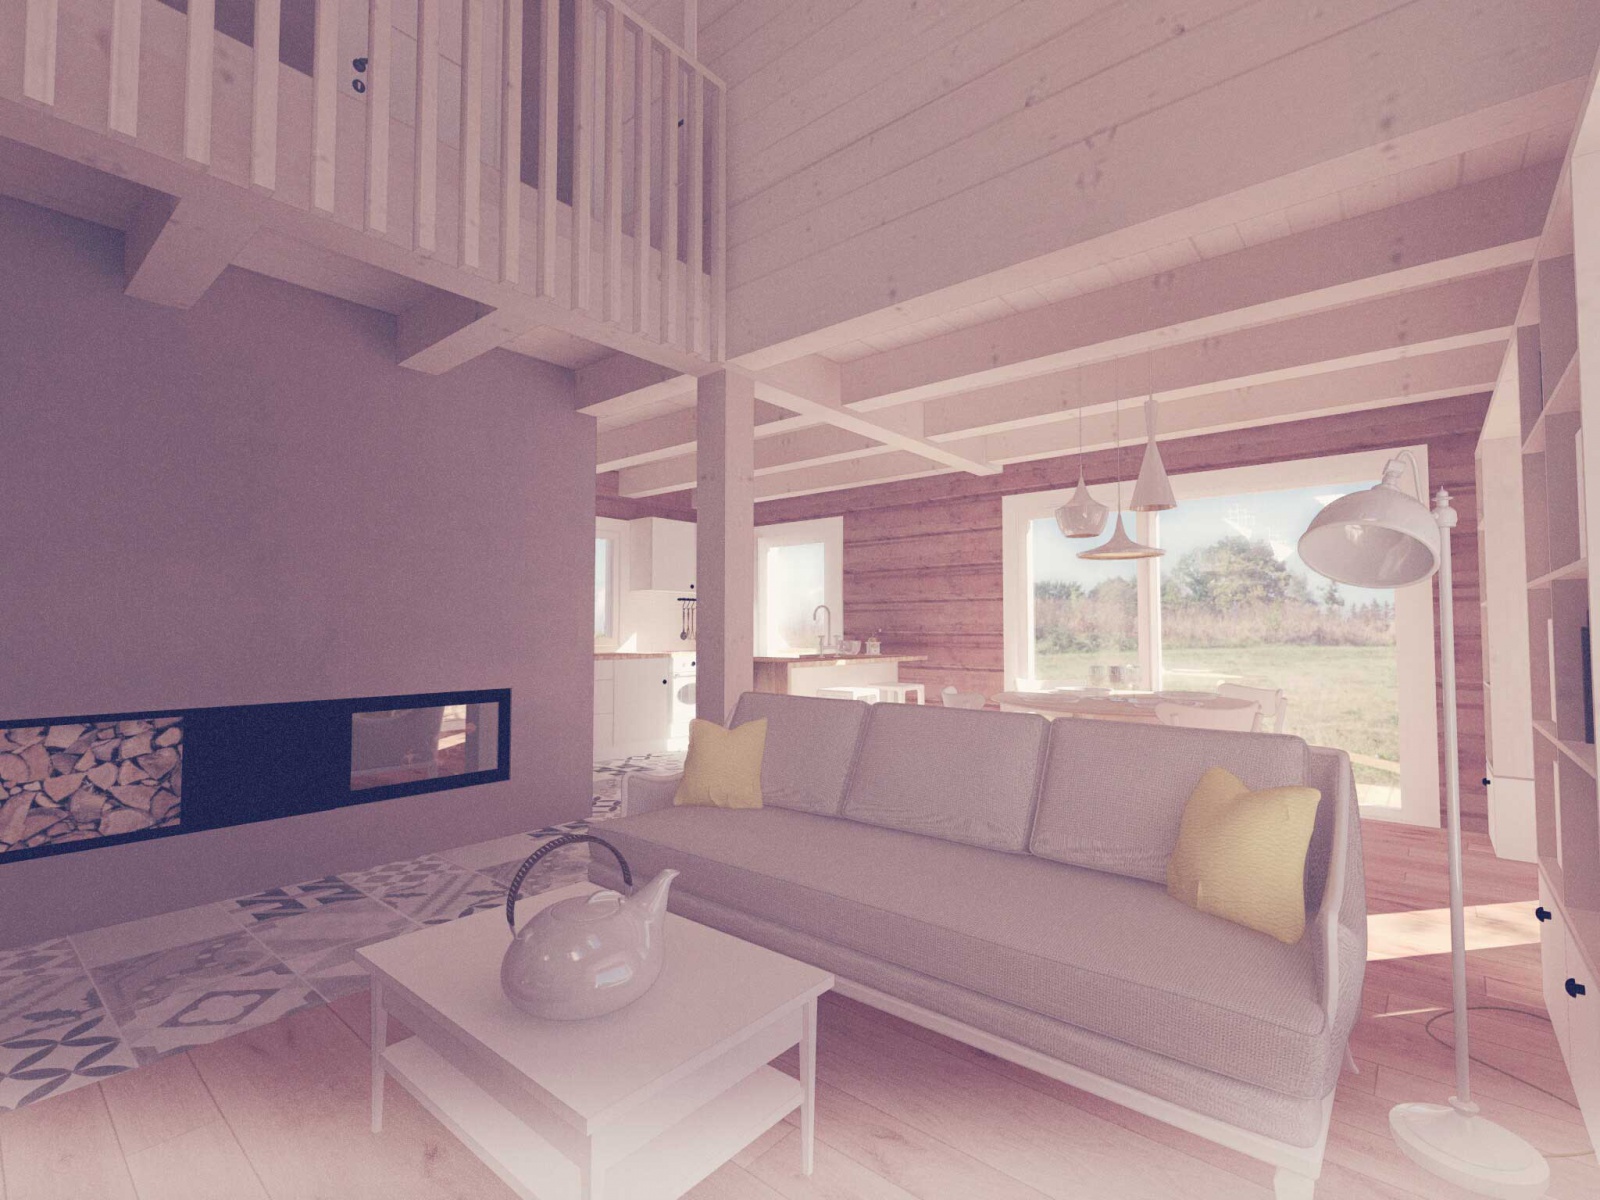 Cedrová roubenka - obývací pokoj - 3K Architects s.r.o.